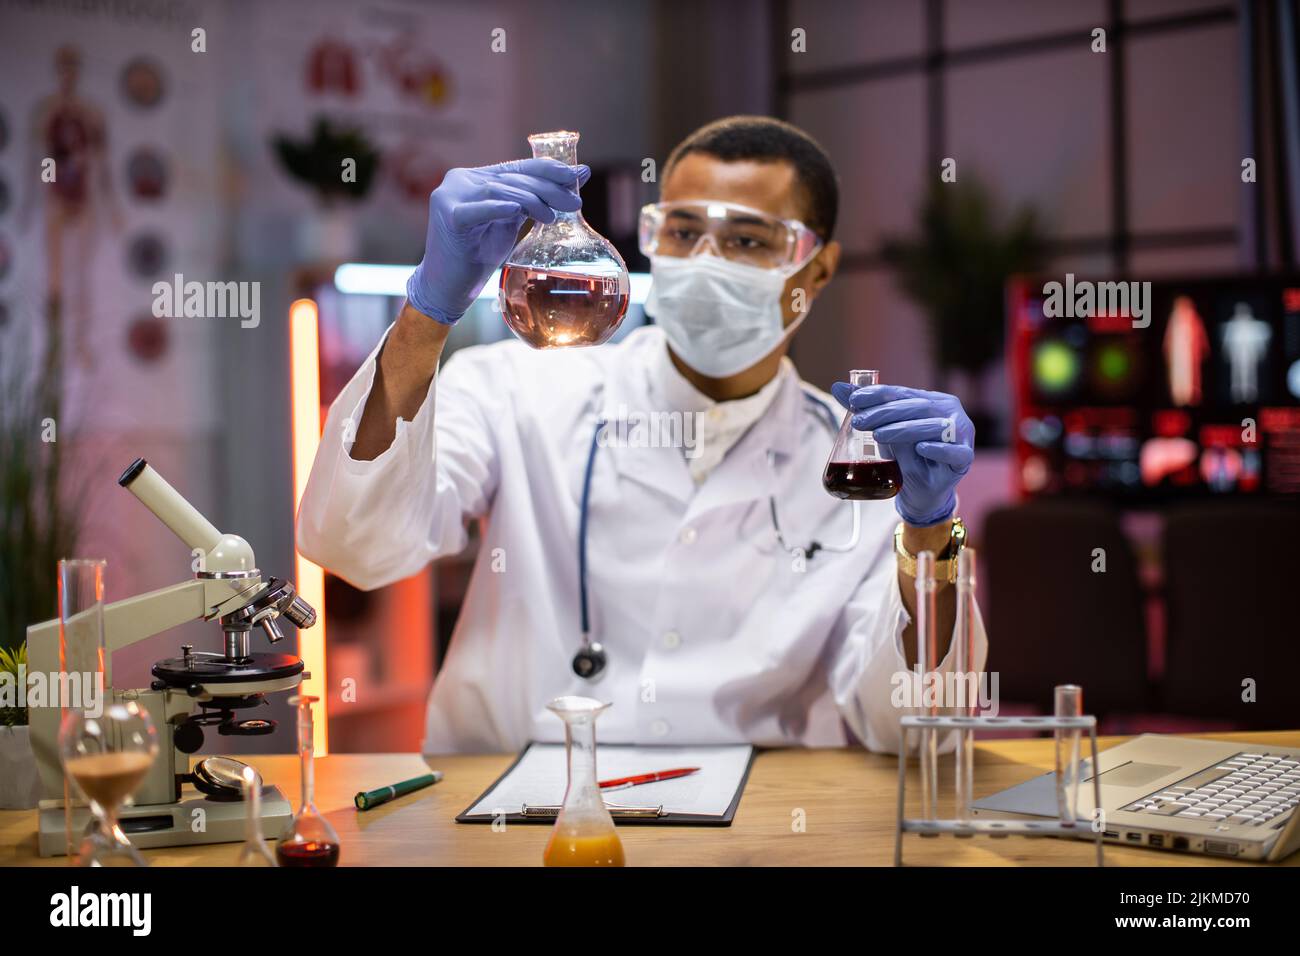 Scienziato maschile esperto in maschera protettiva e occhiali che fanno l'analisi della sostanza. Ricercatore chimico in laboratorio sterile facendo esperimenti per l'industria medica utilizzando la tecnologia moderna. Foto Stock